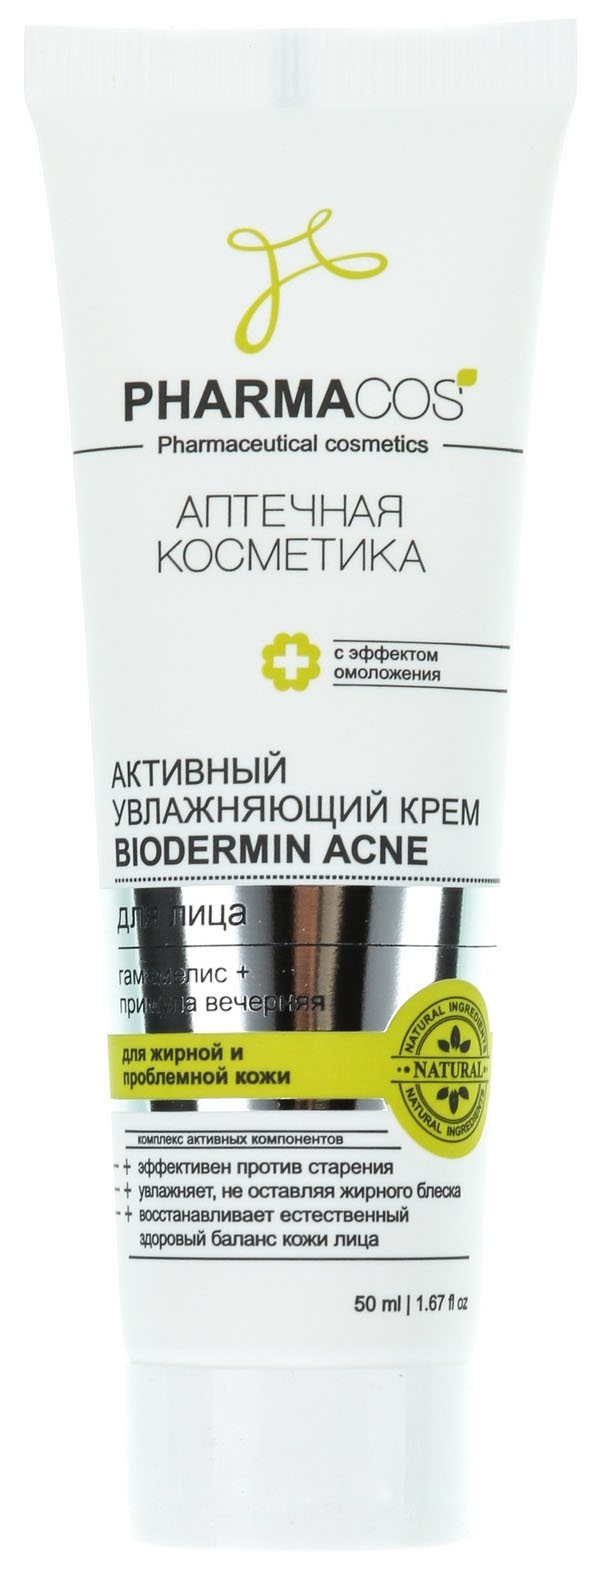 Крем для лица Витэкс Pharmacos Biodermin Acne 50 мл витэкс крем для лица увлажняющий активный biodermin acne pharmacos 50